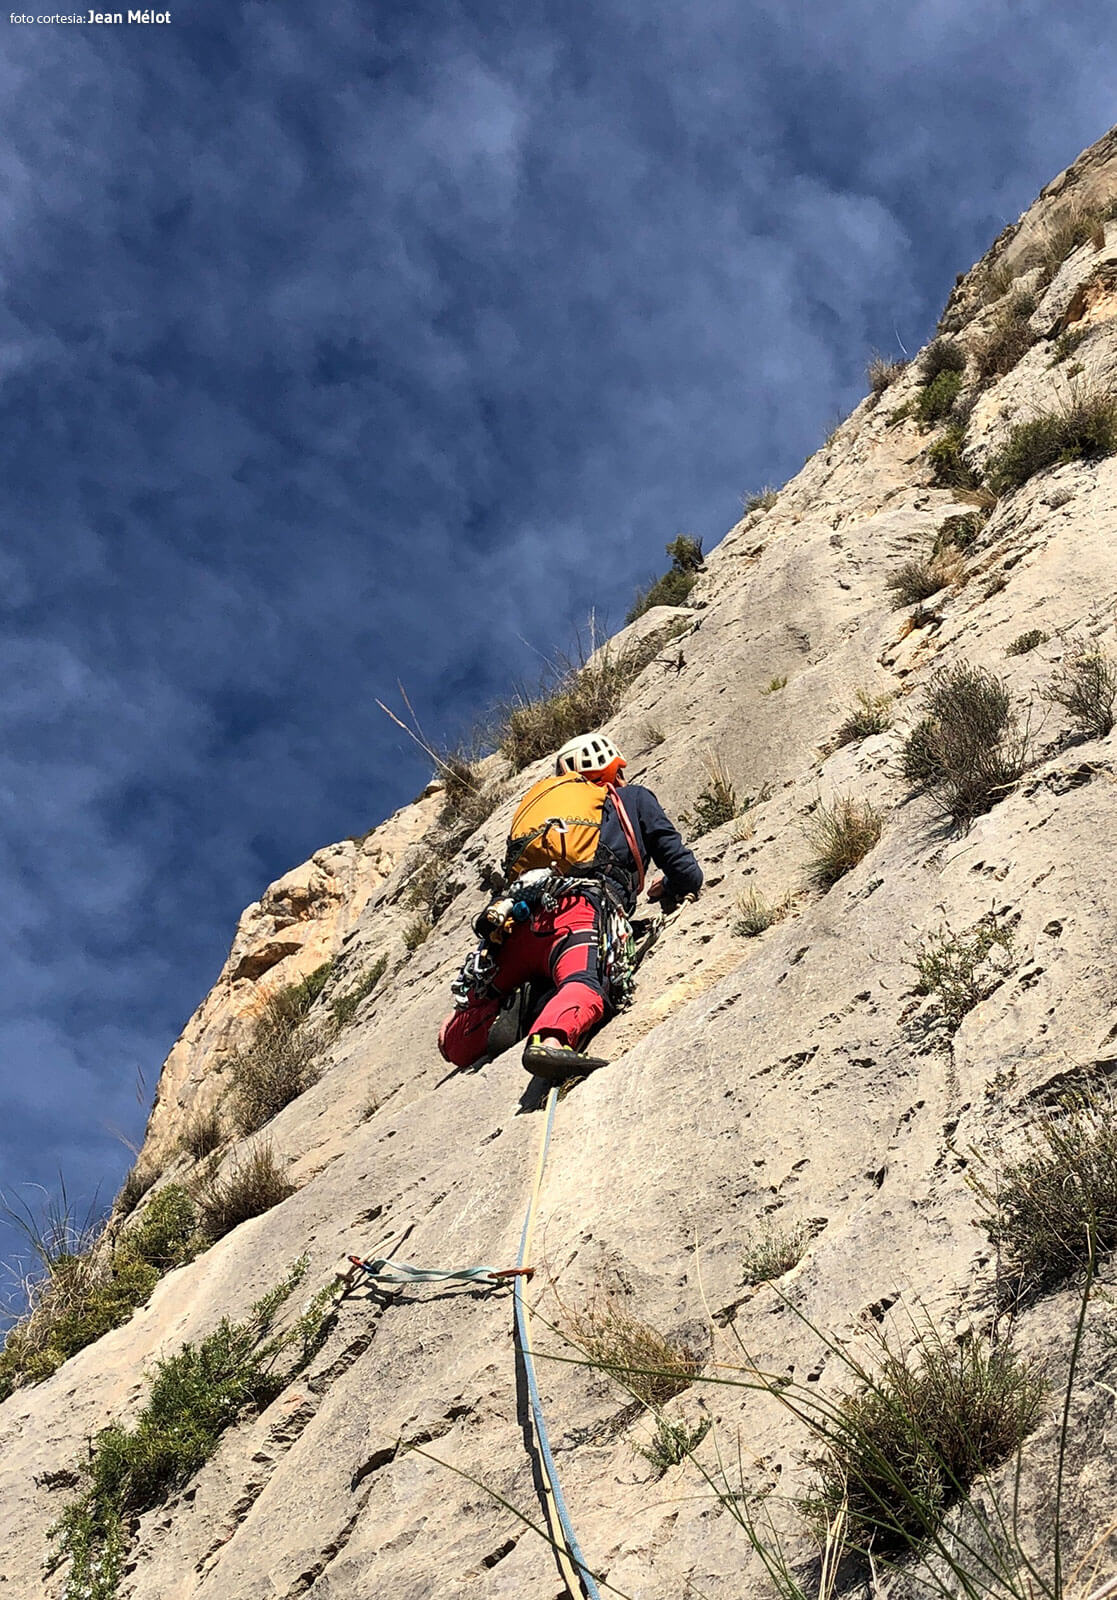 Vía de escalada Carrozas 26 aniversario en el Peñón Divino. Escalando el segundo largo